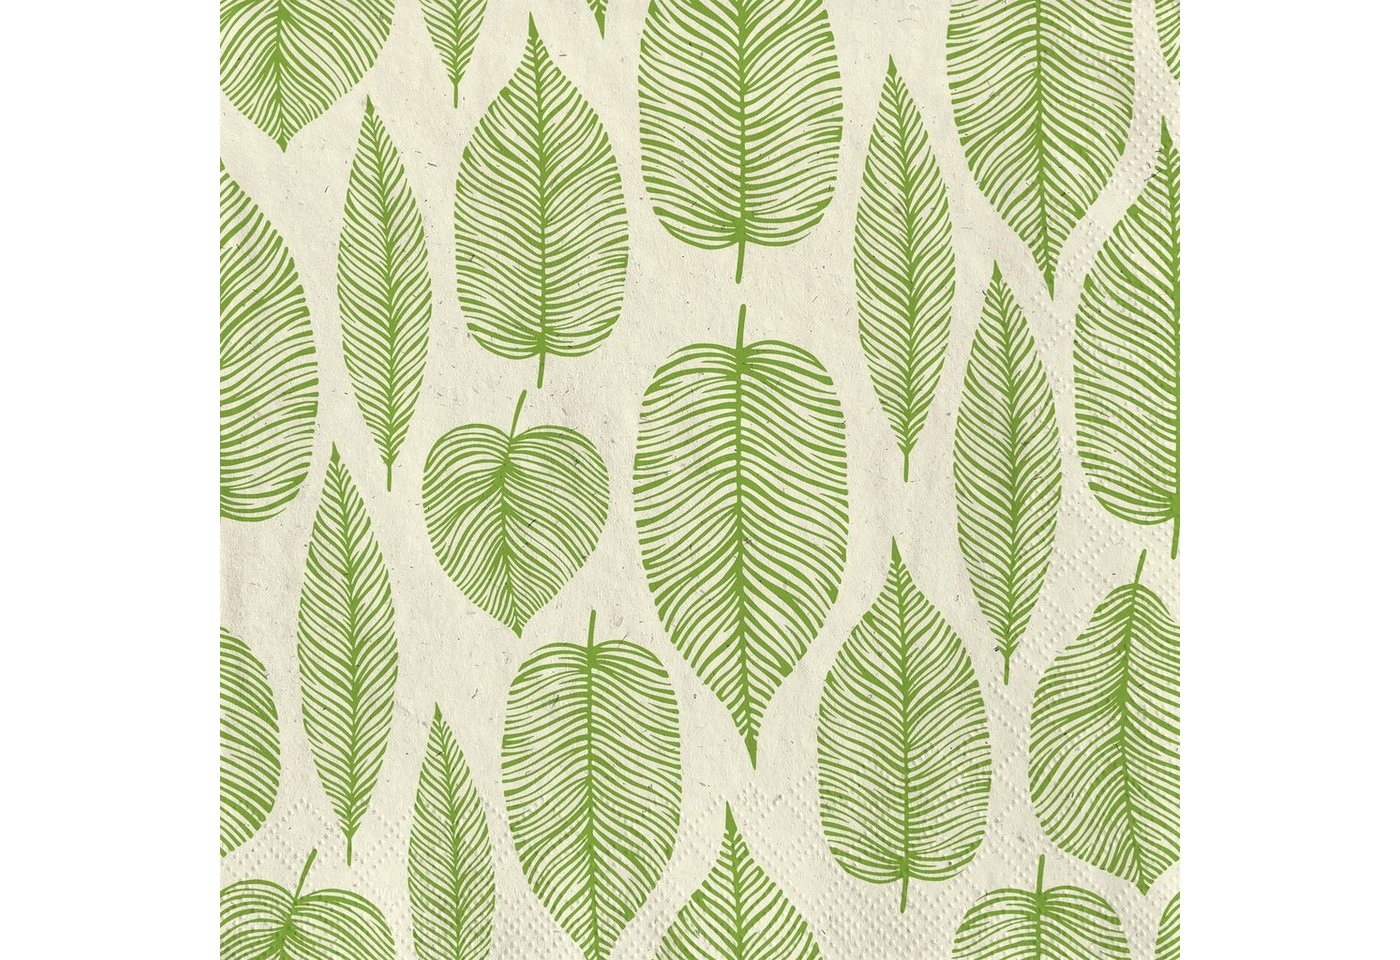 Fasana Papierserviette 20 Servietten Gras Green Leaves 33x33cm, (20 St) von Fasana